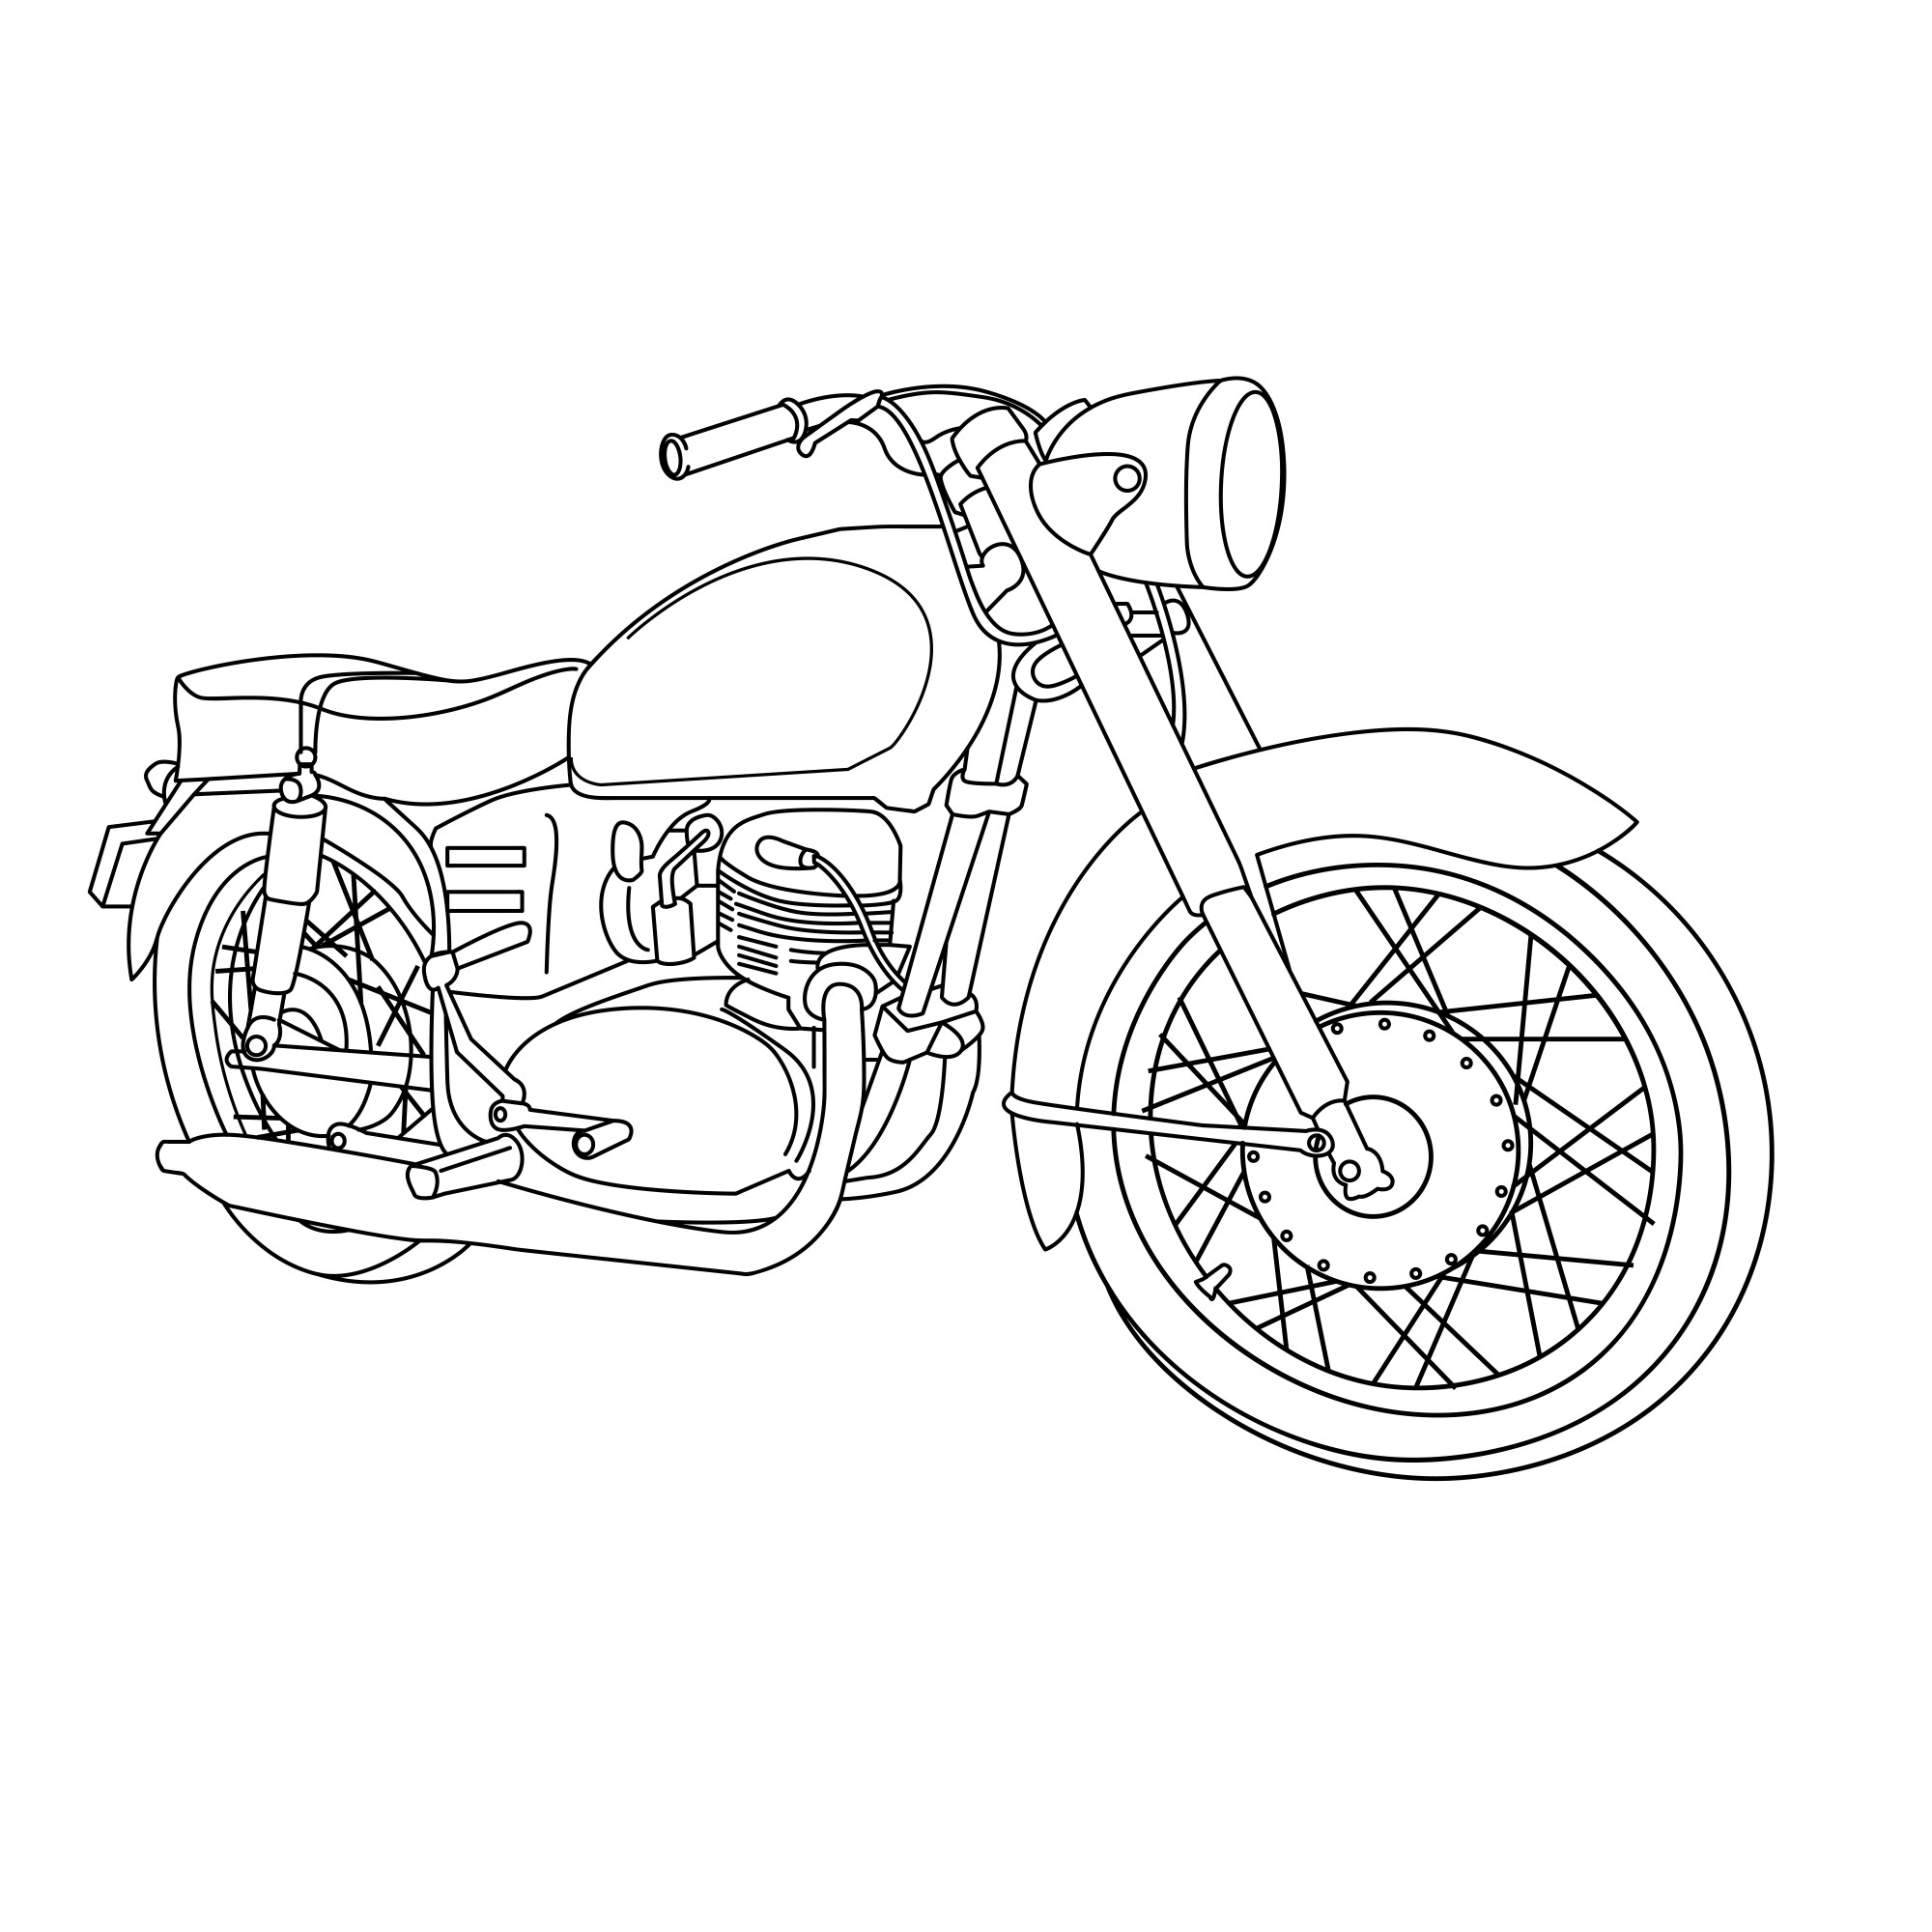 Раскраска для детей: мотоцикл «Урал»